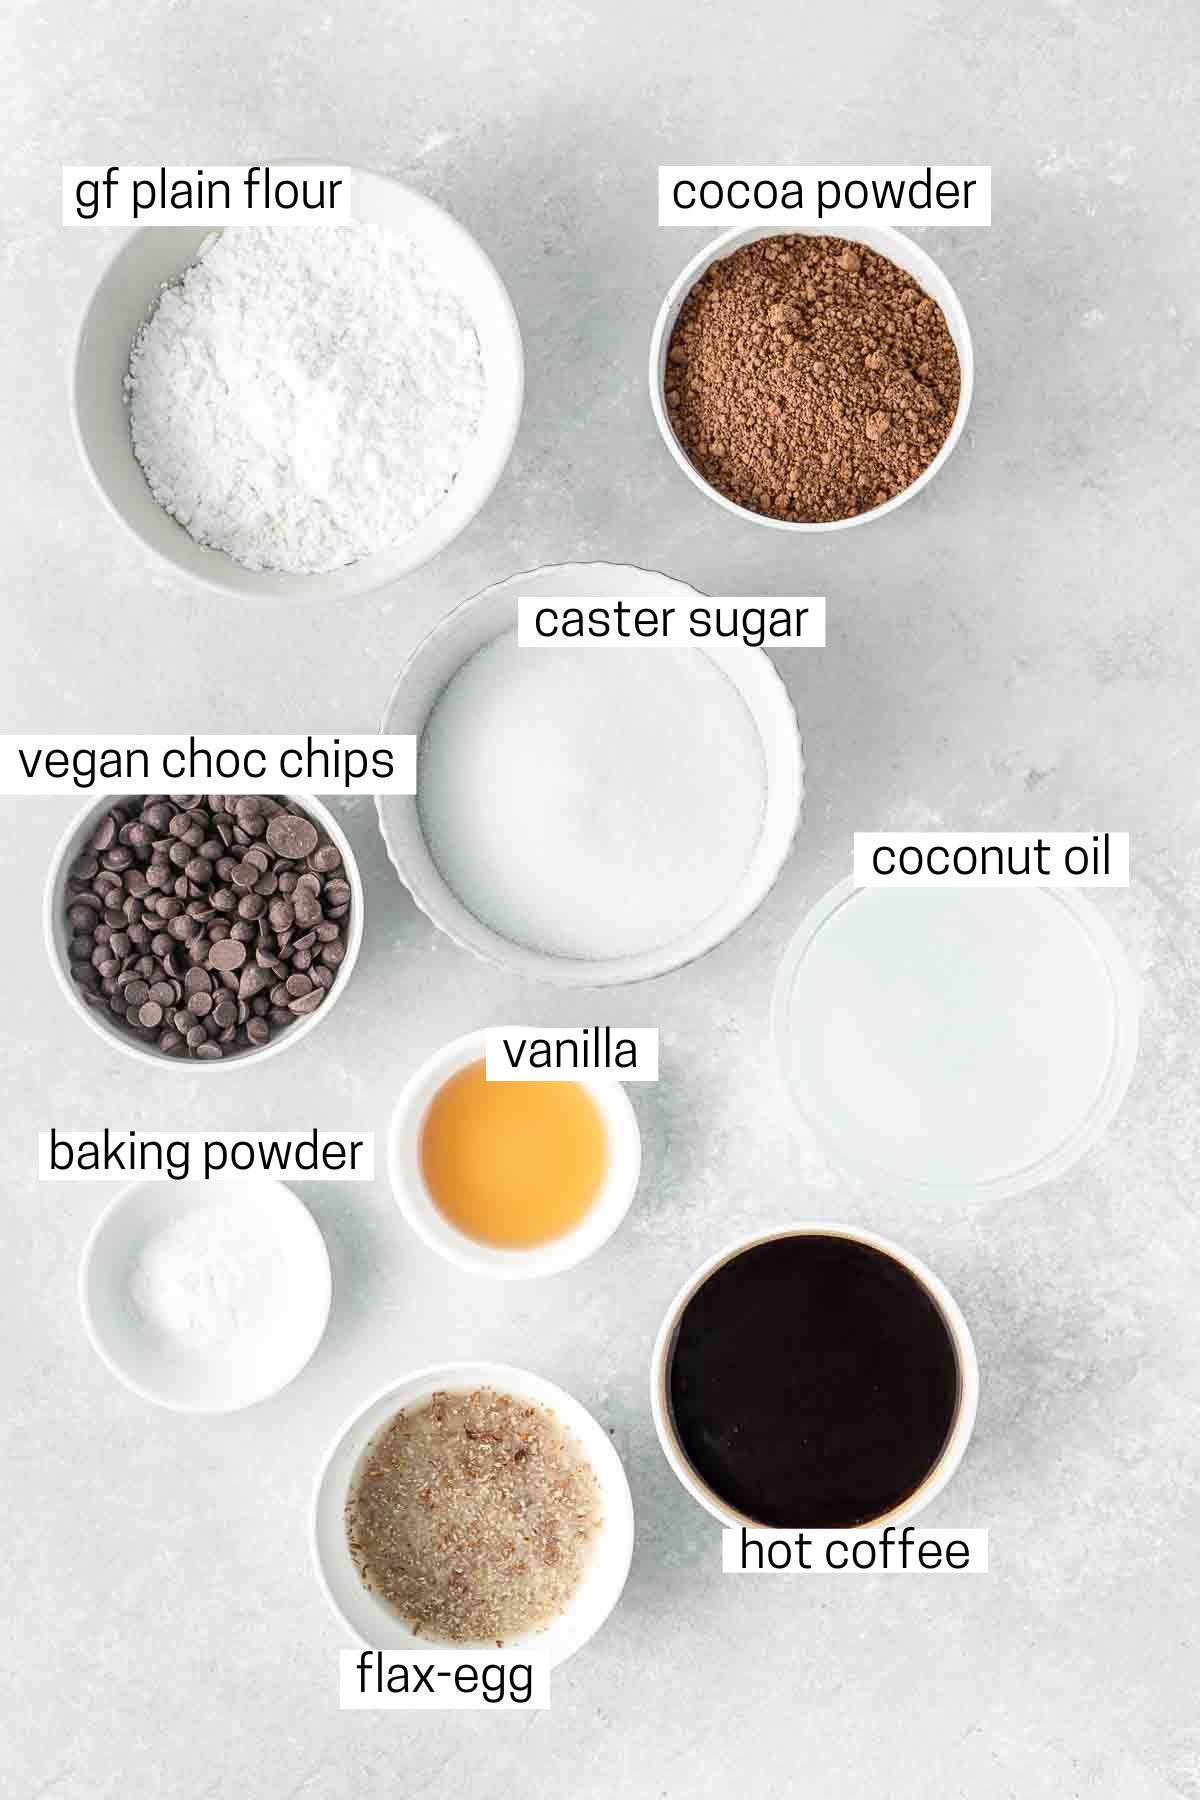 All ingredients needed to make vegan brownies.